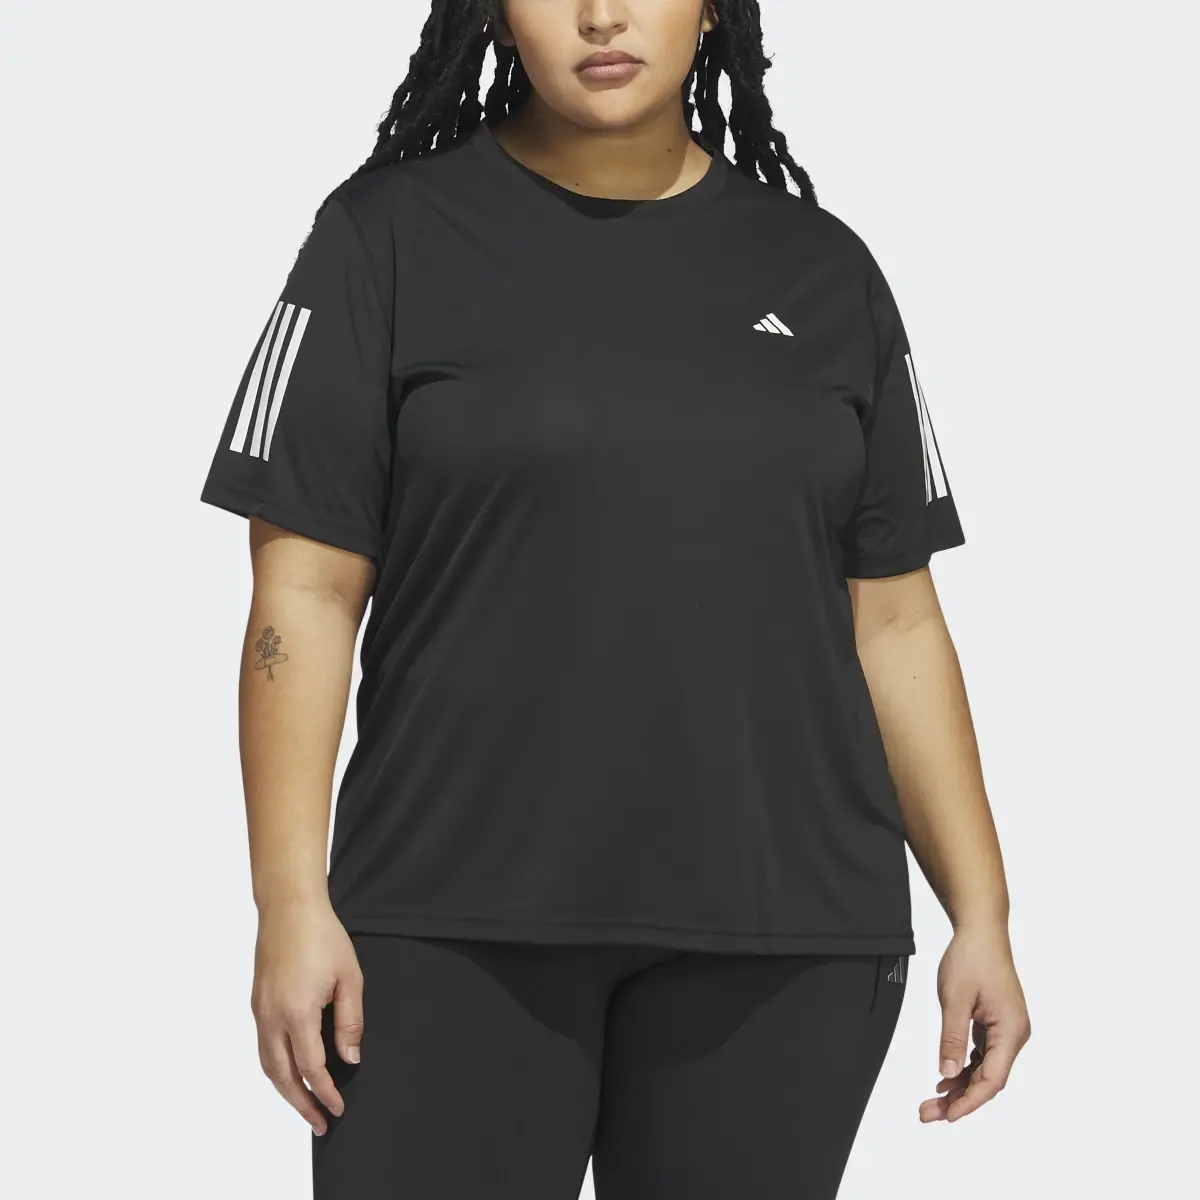 Adidas T-shirt Own the Run (Curvy). 1